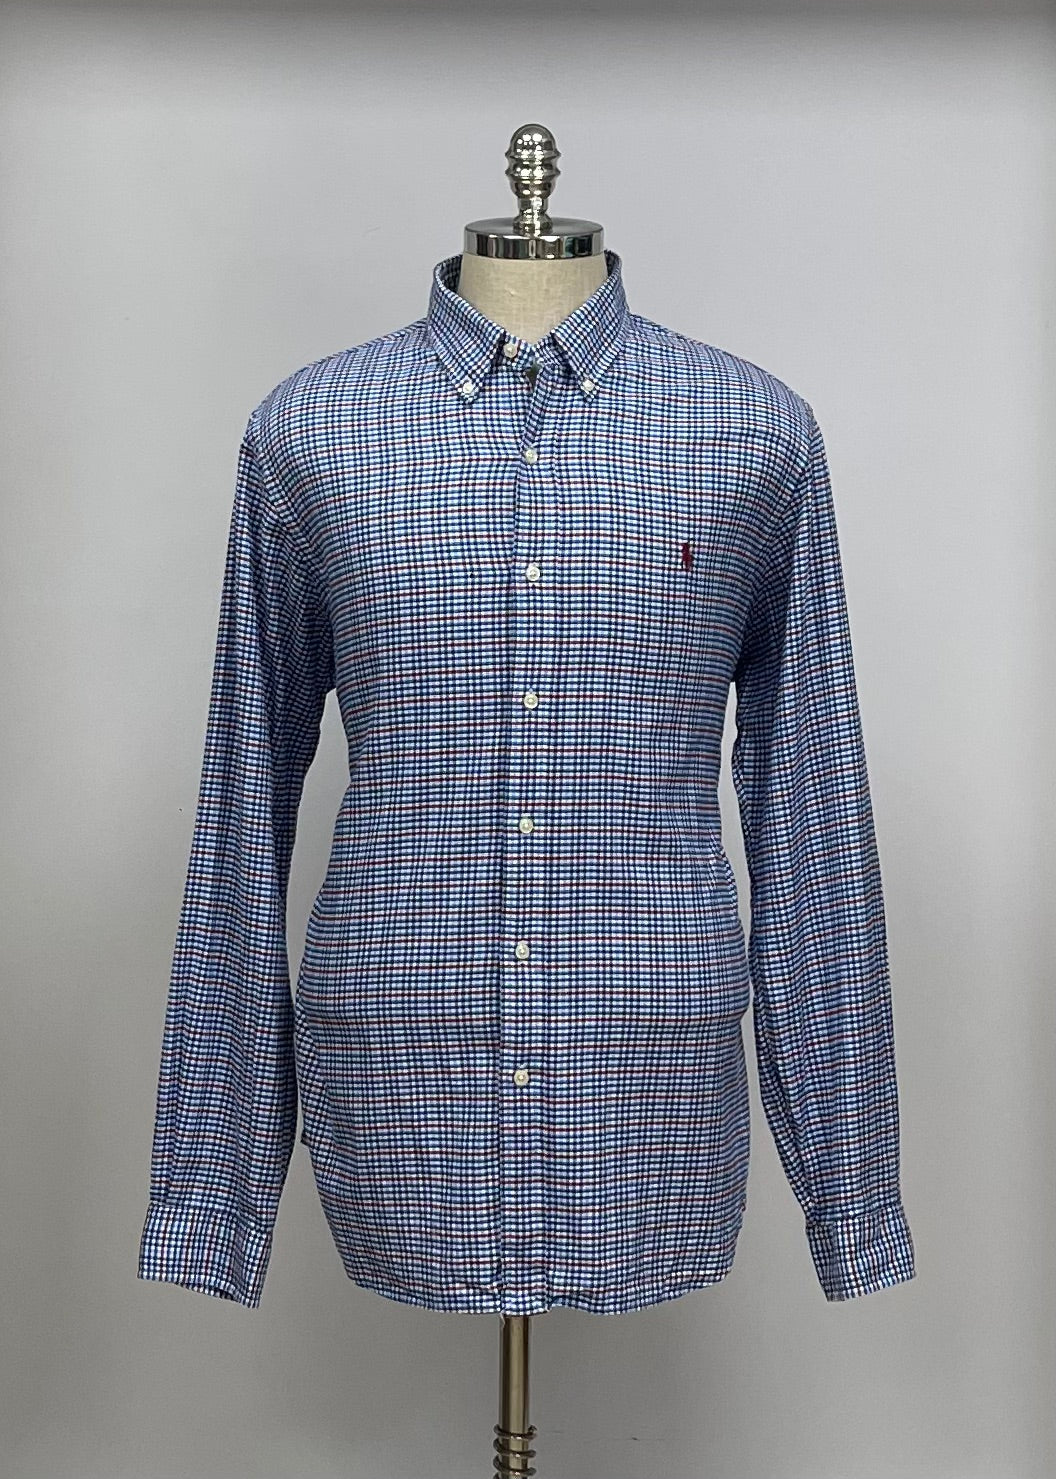 Camisa Polo Ralph Lauren 🏇🏼 Color blanco de cuadros en color azul y rojo Talla XL Entalle Regular